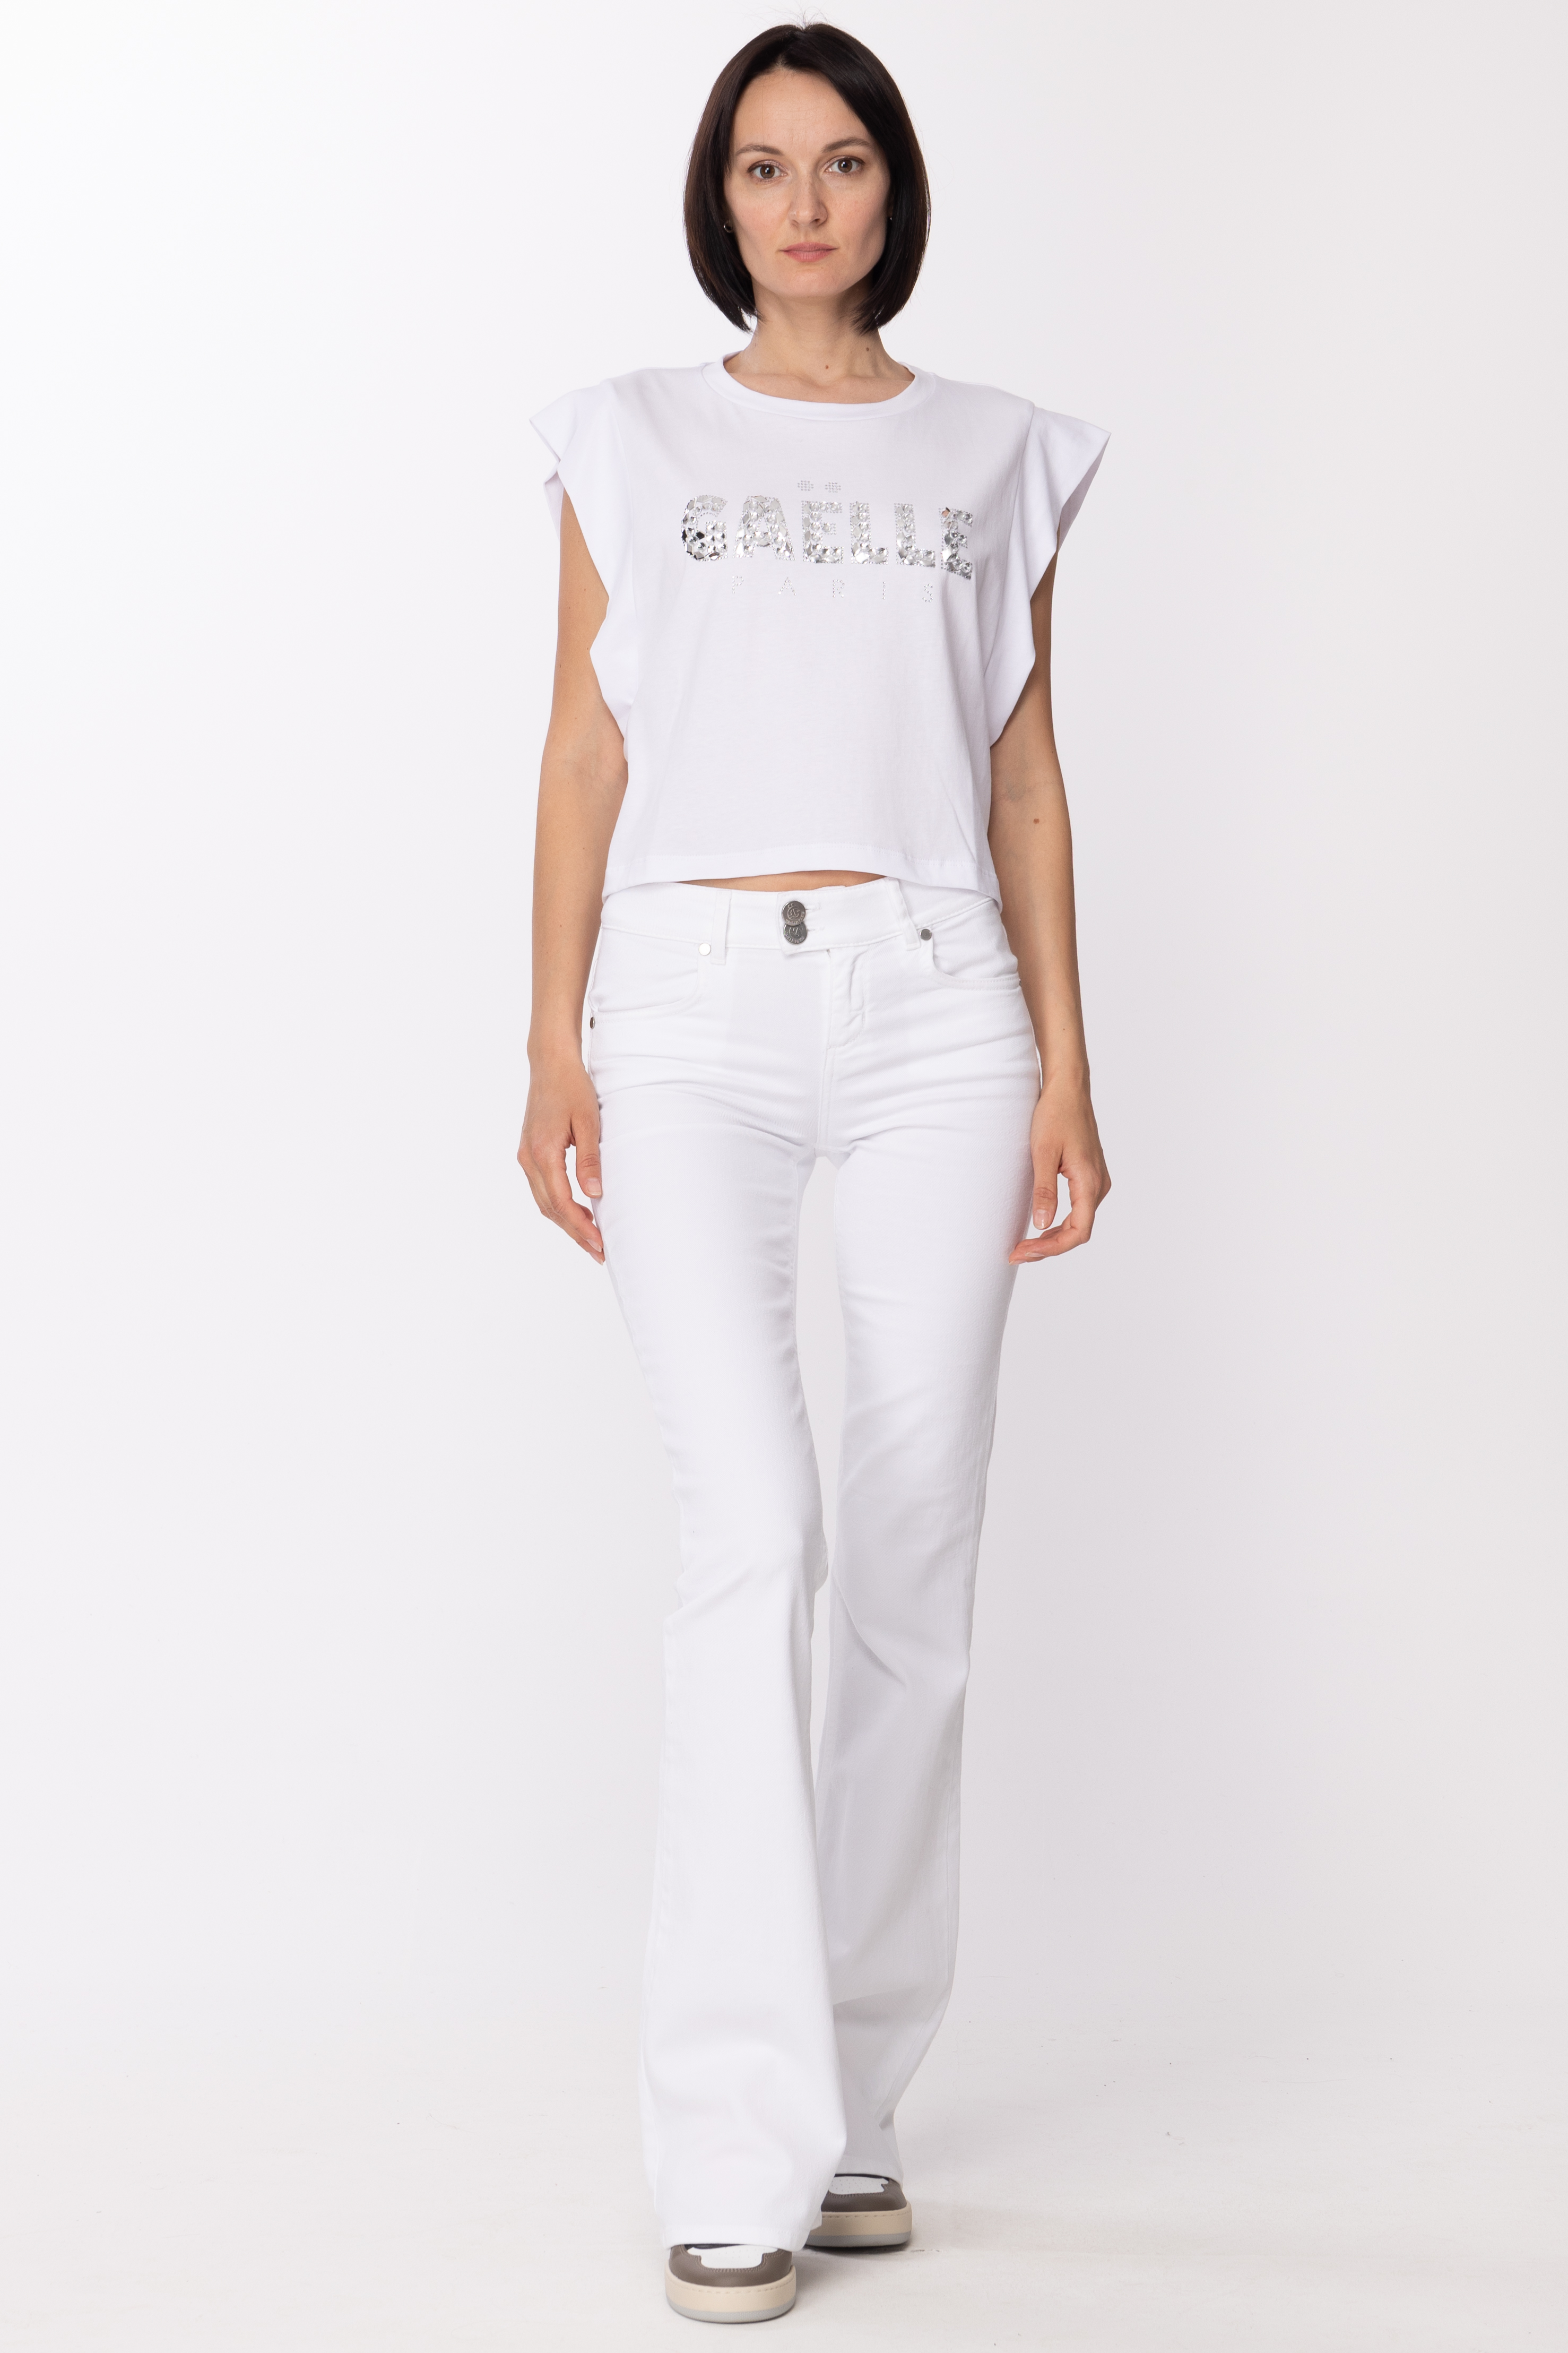 Vorschau: Gaelle Paris T-Shirt mit Strass-Logo Bianco